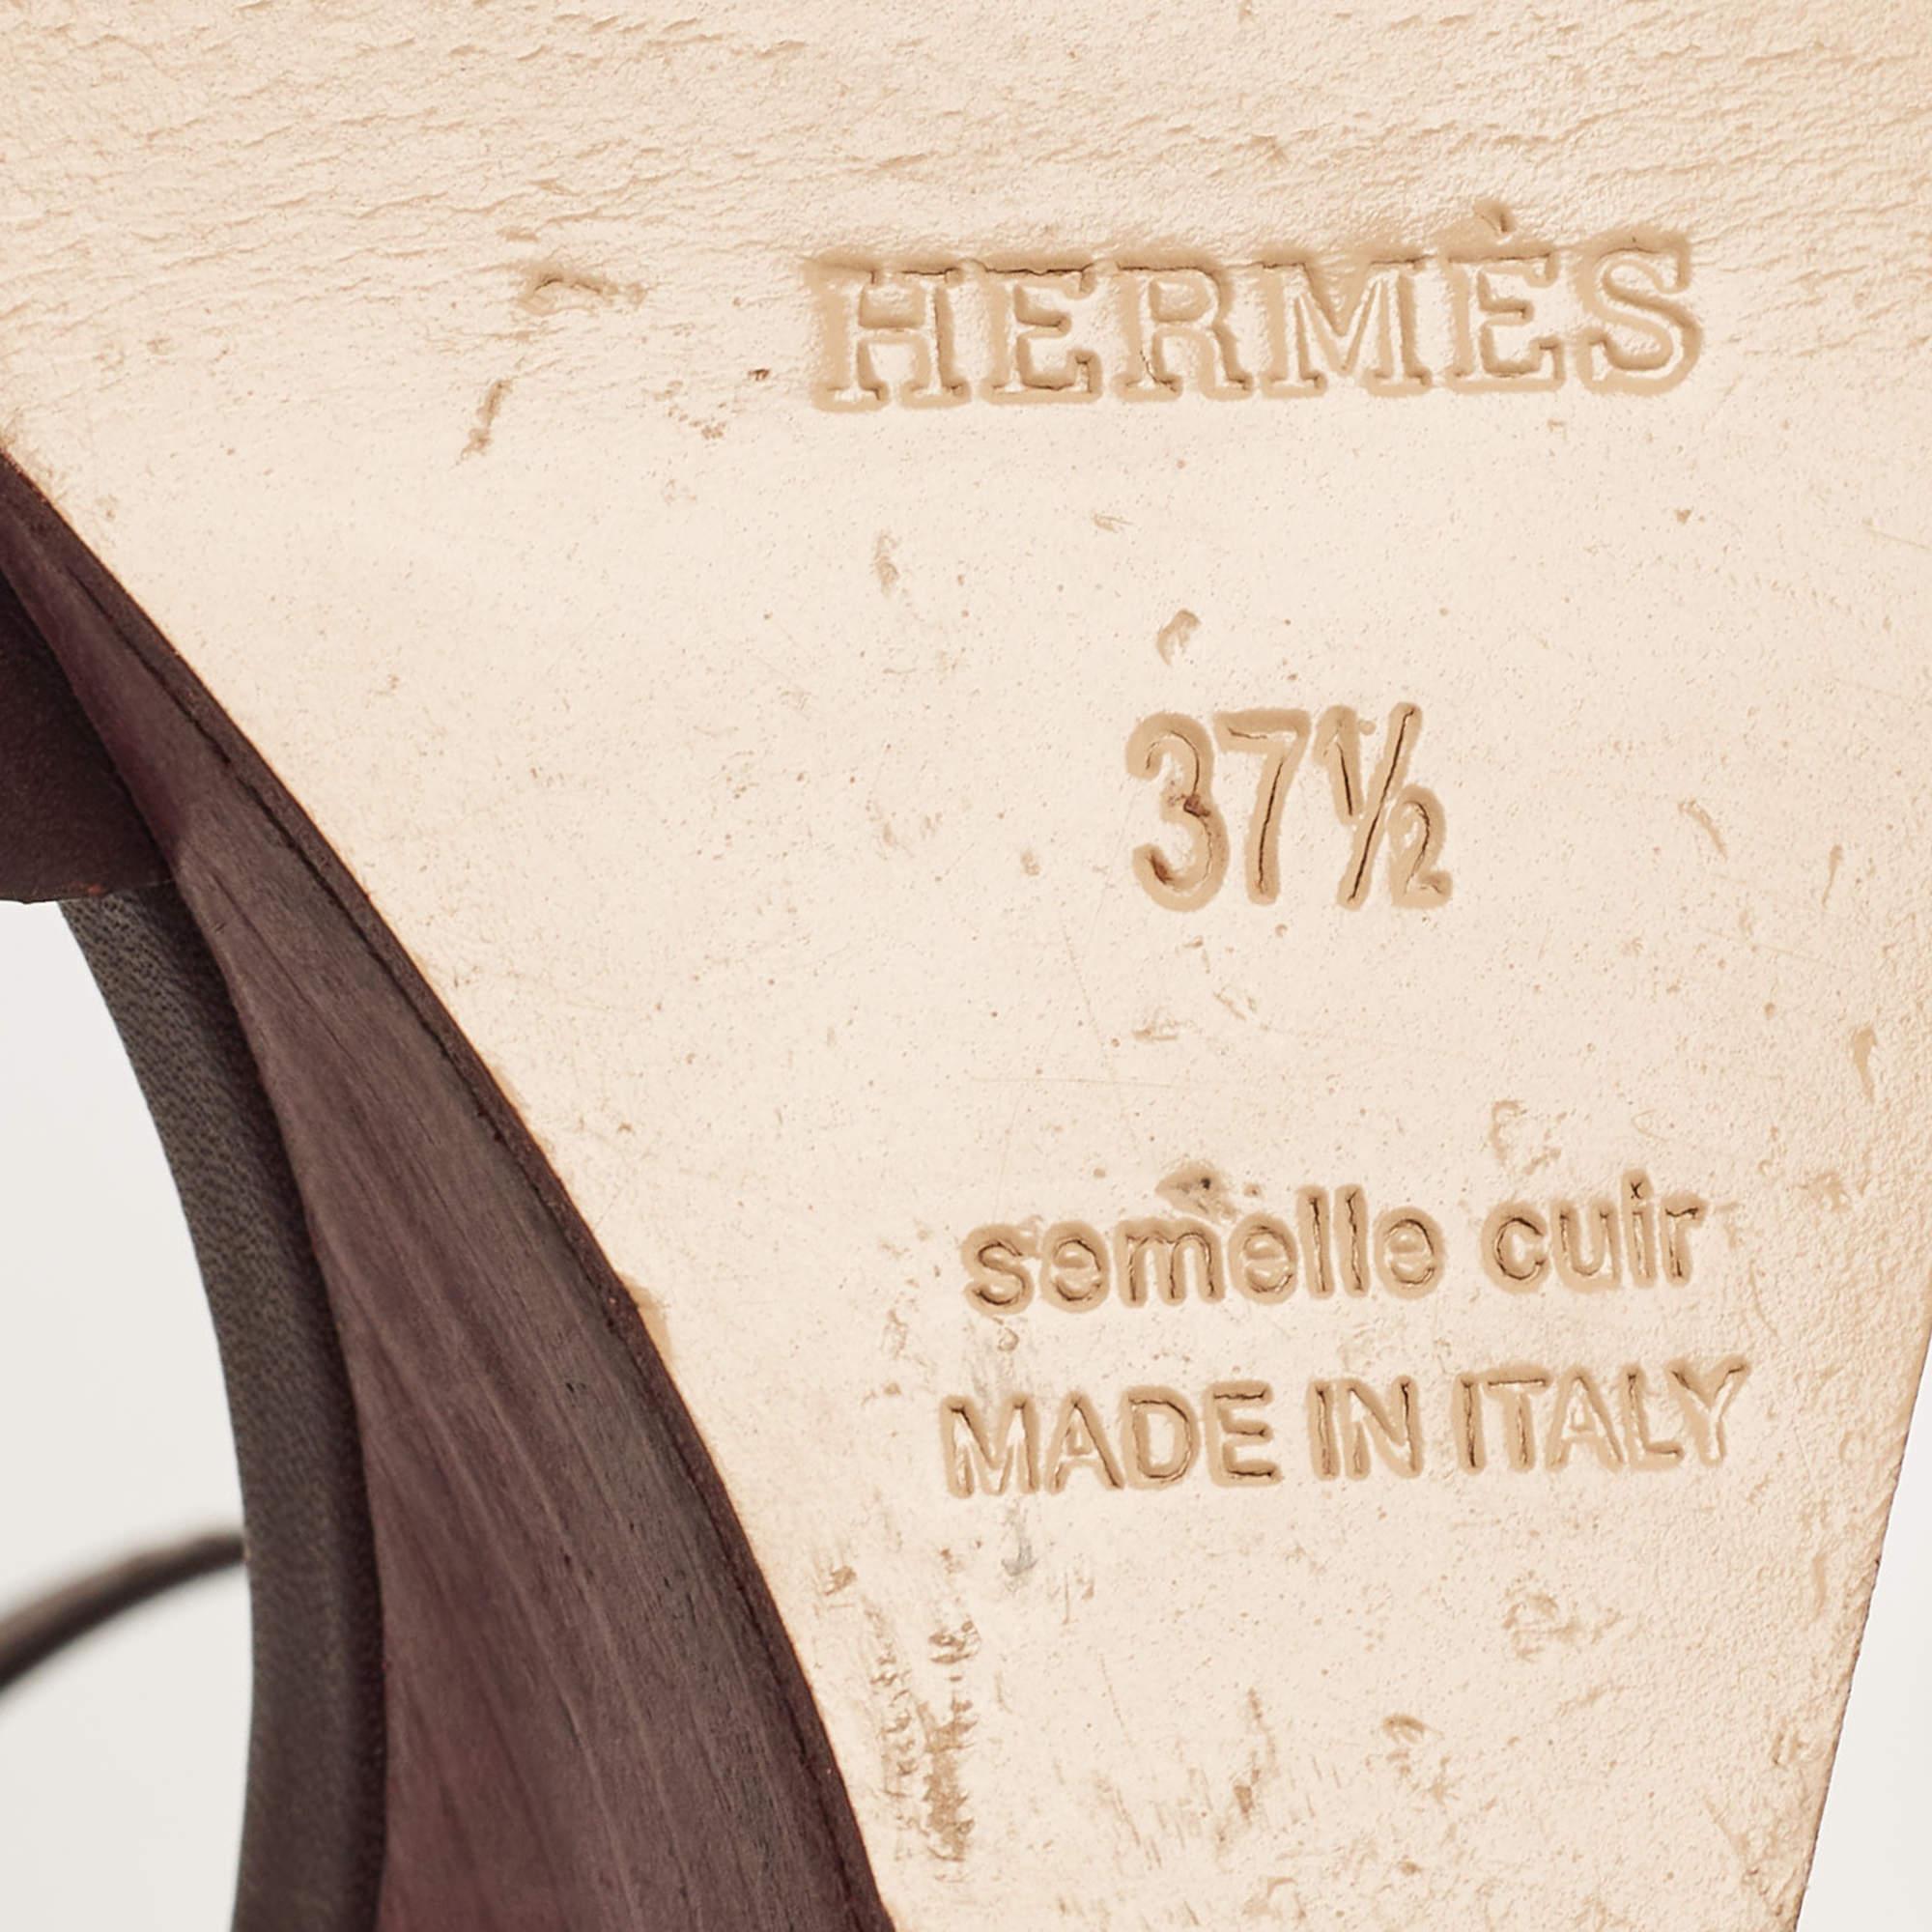 Hermes Burgundy Leather Legend Wedge Sandals Size 37.5 3